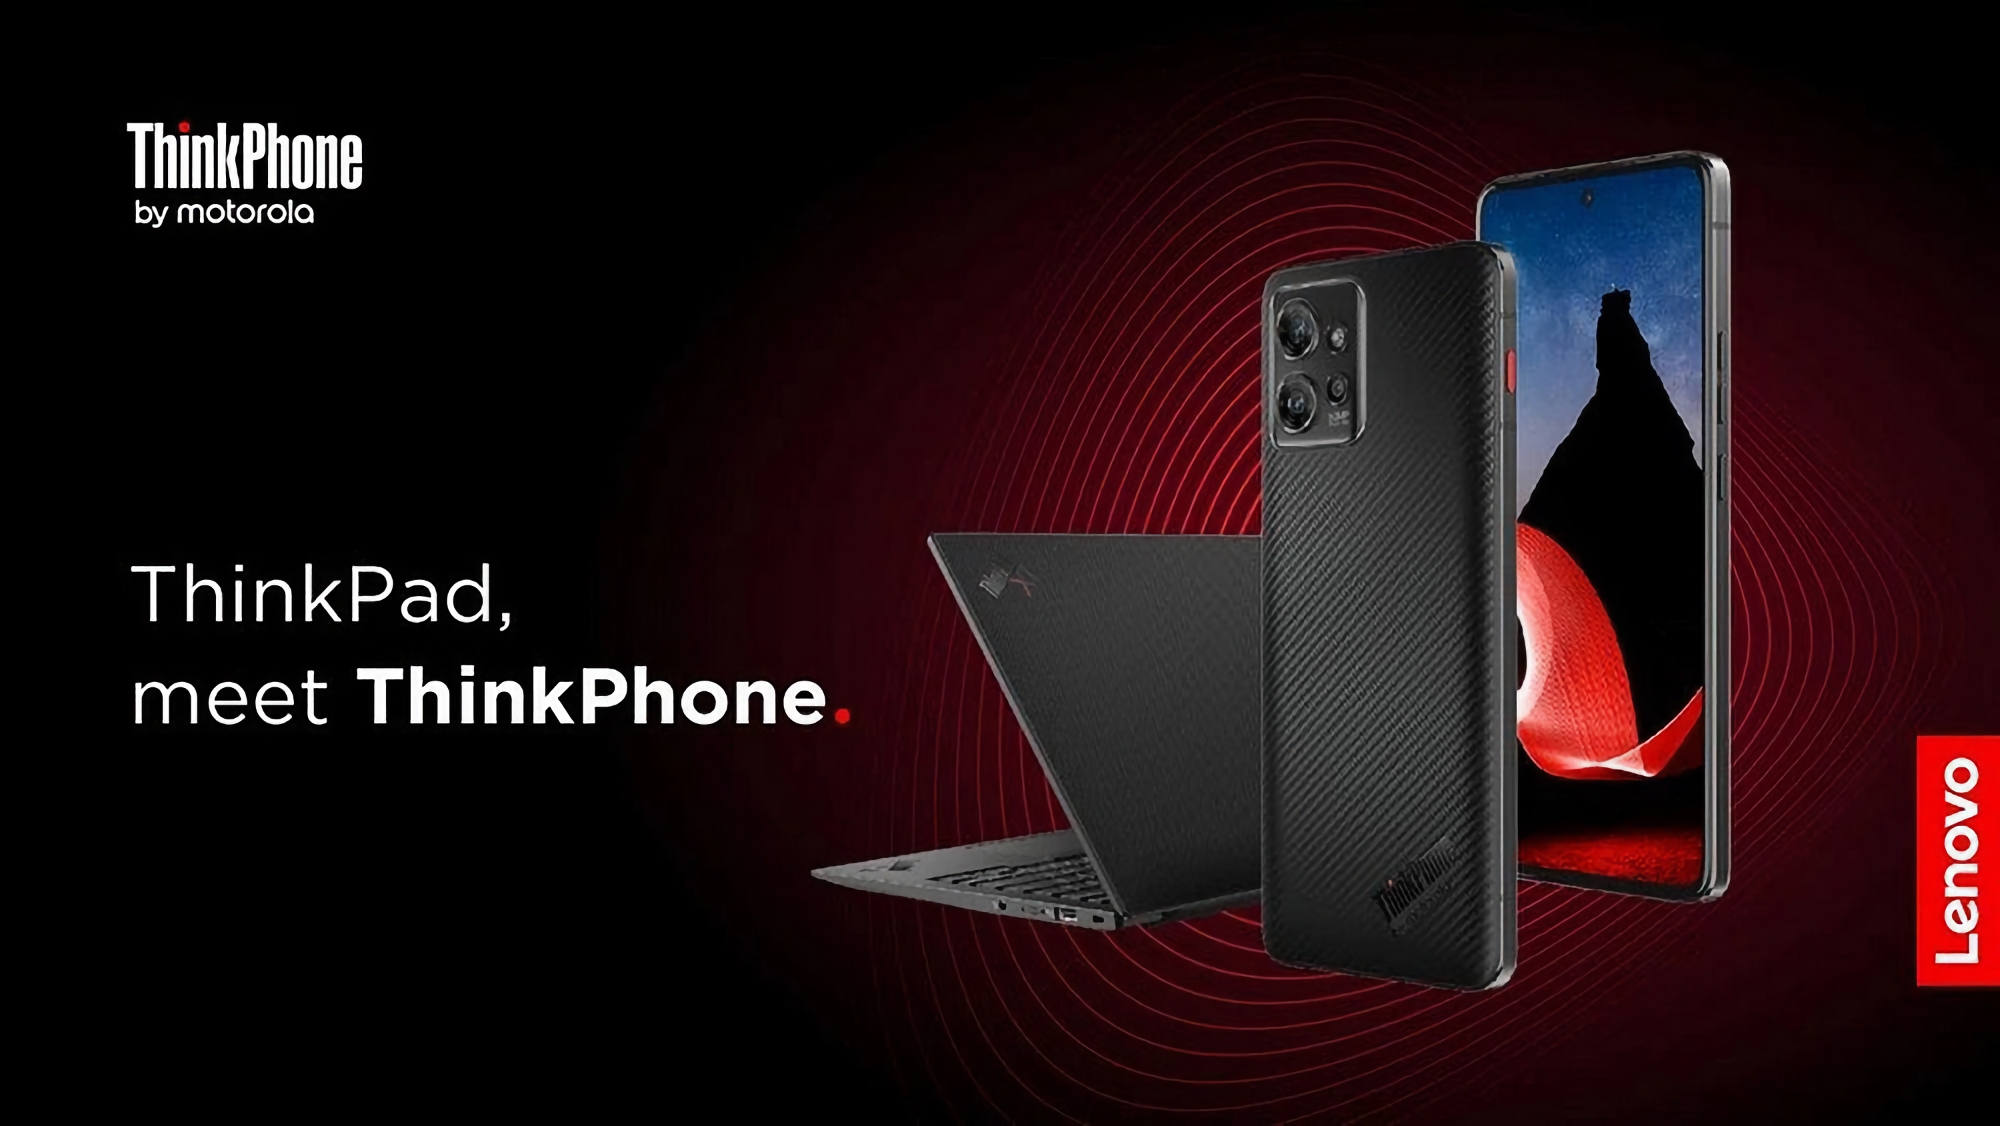 ThinkPhone von Motorola mit Snapdragon 8+ Gen 1 Chip, 144 Hz Bildschirm und IP68 Schutz wird in Europa veröffentlicht, die Neuheit wird 1000 Euro kosten